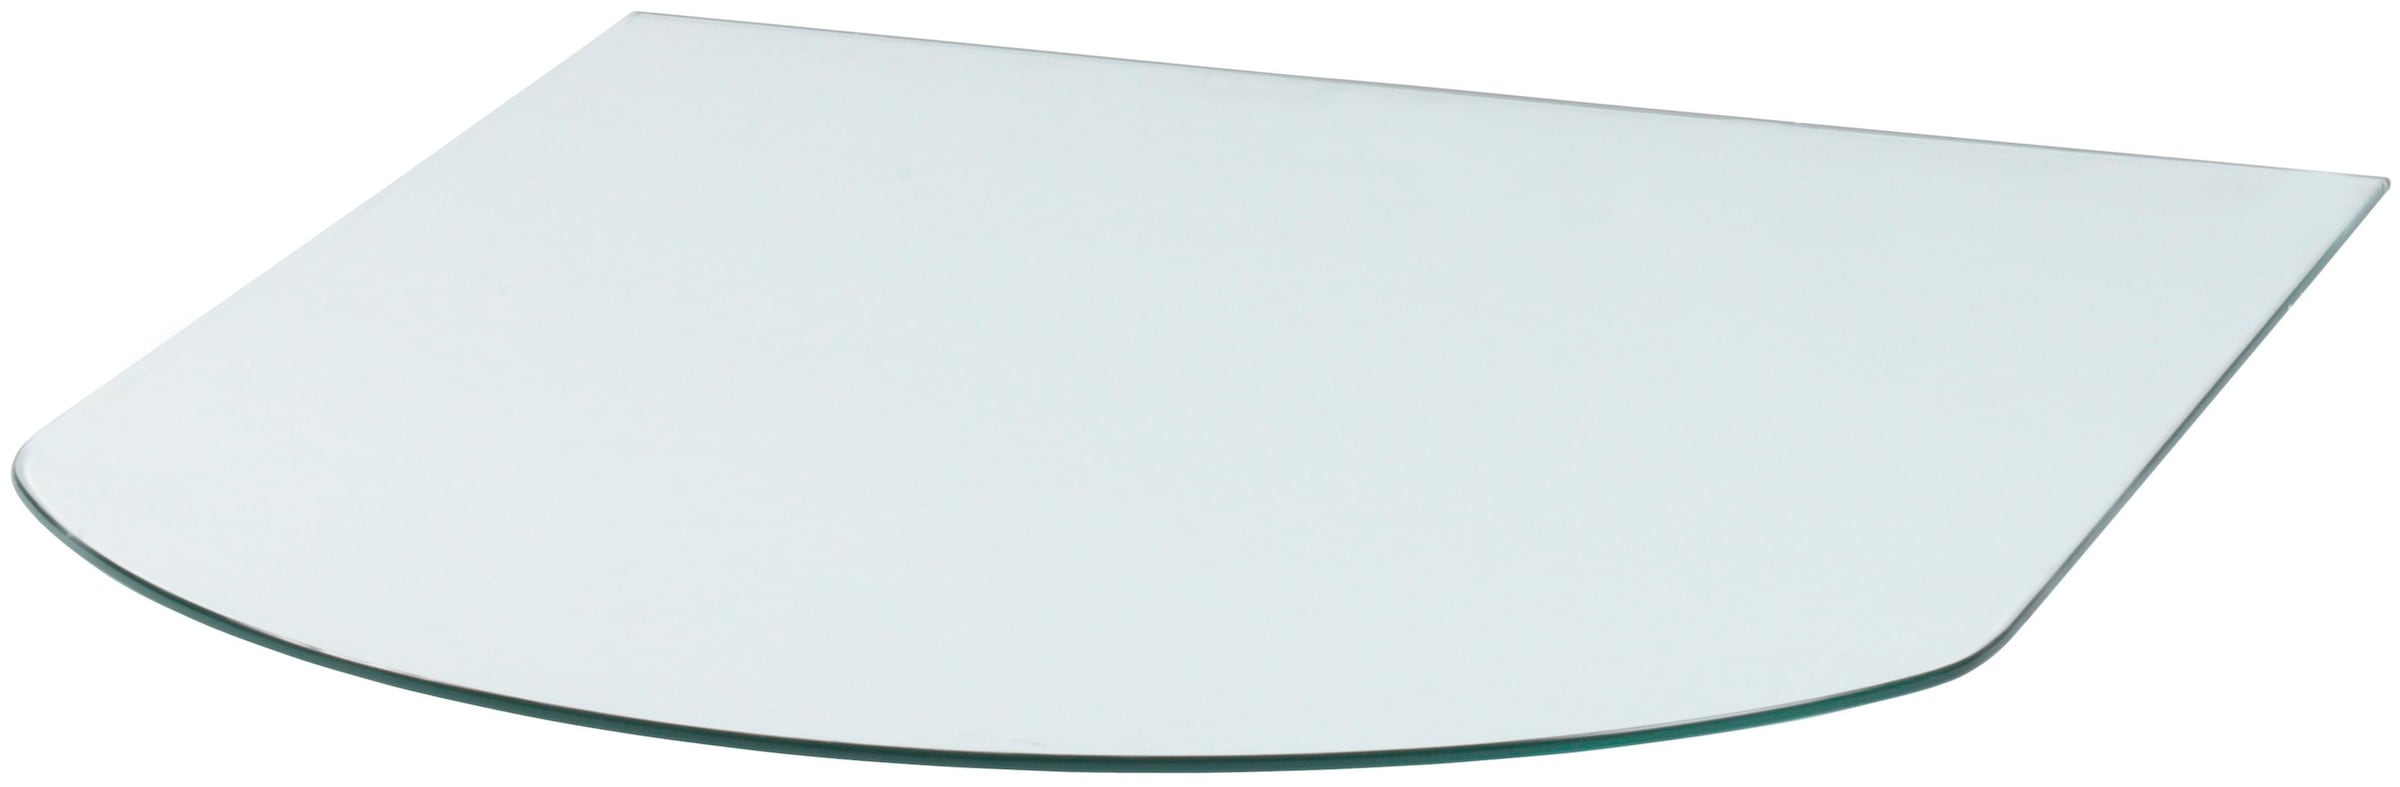 Bodenschutzplatte, Glas-Halbrund, 85 x 110 cm, 8mm Stärke, transparent, zum Funkenschutz